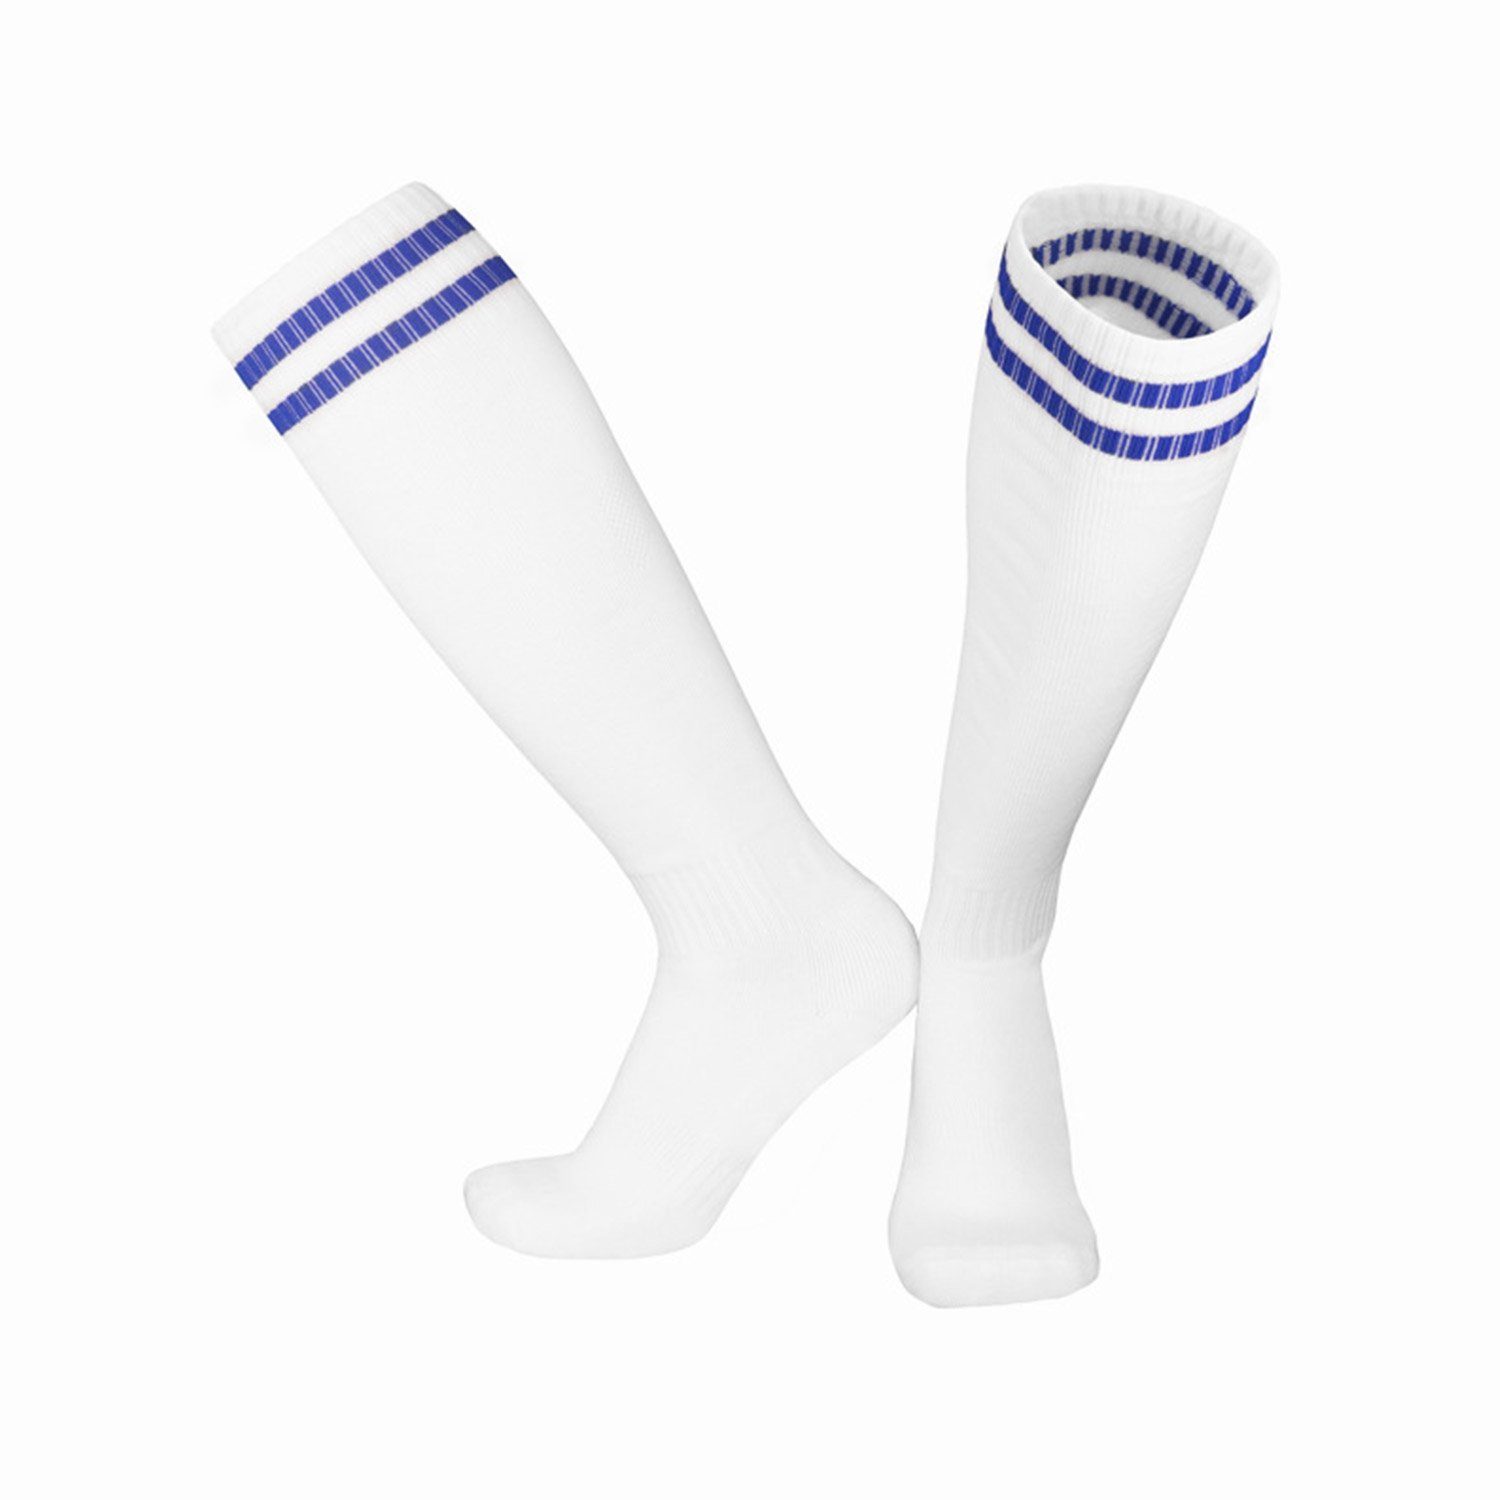 MAGICSHE Sportsocken Kinderfußball -Socken für Erwachsene Fadenfäden Socken Neutral Training Socken Fußballtraining, Laufen und Bewegung Weiß2